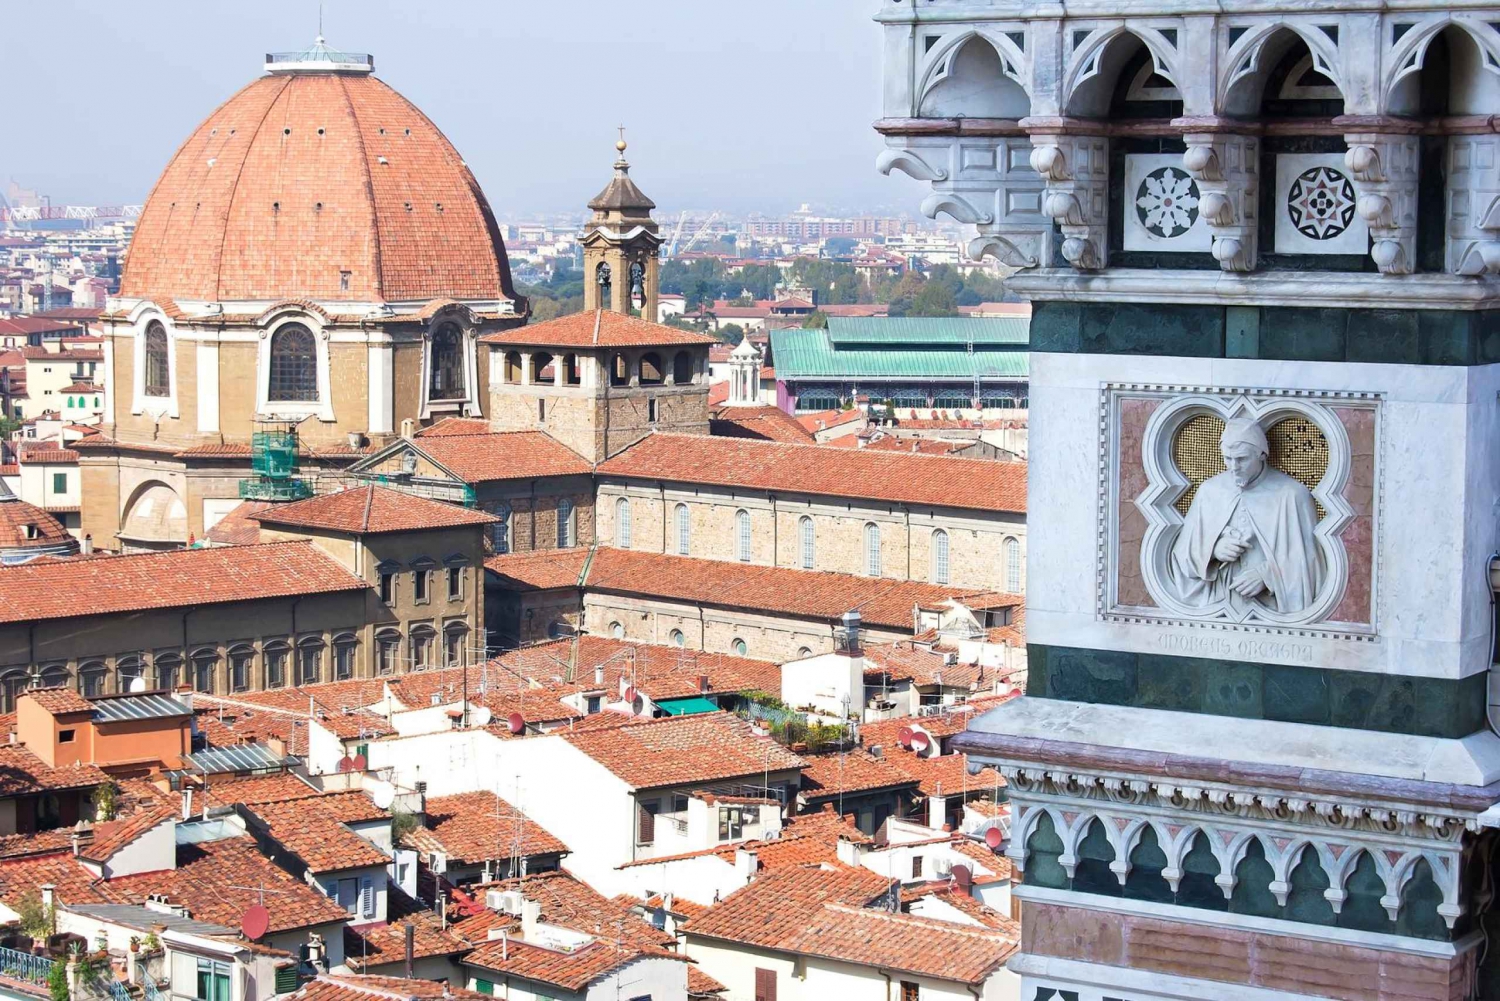 Firenze: Tour privato della Cappella Medicea della durata di 1,5 ore